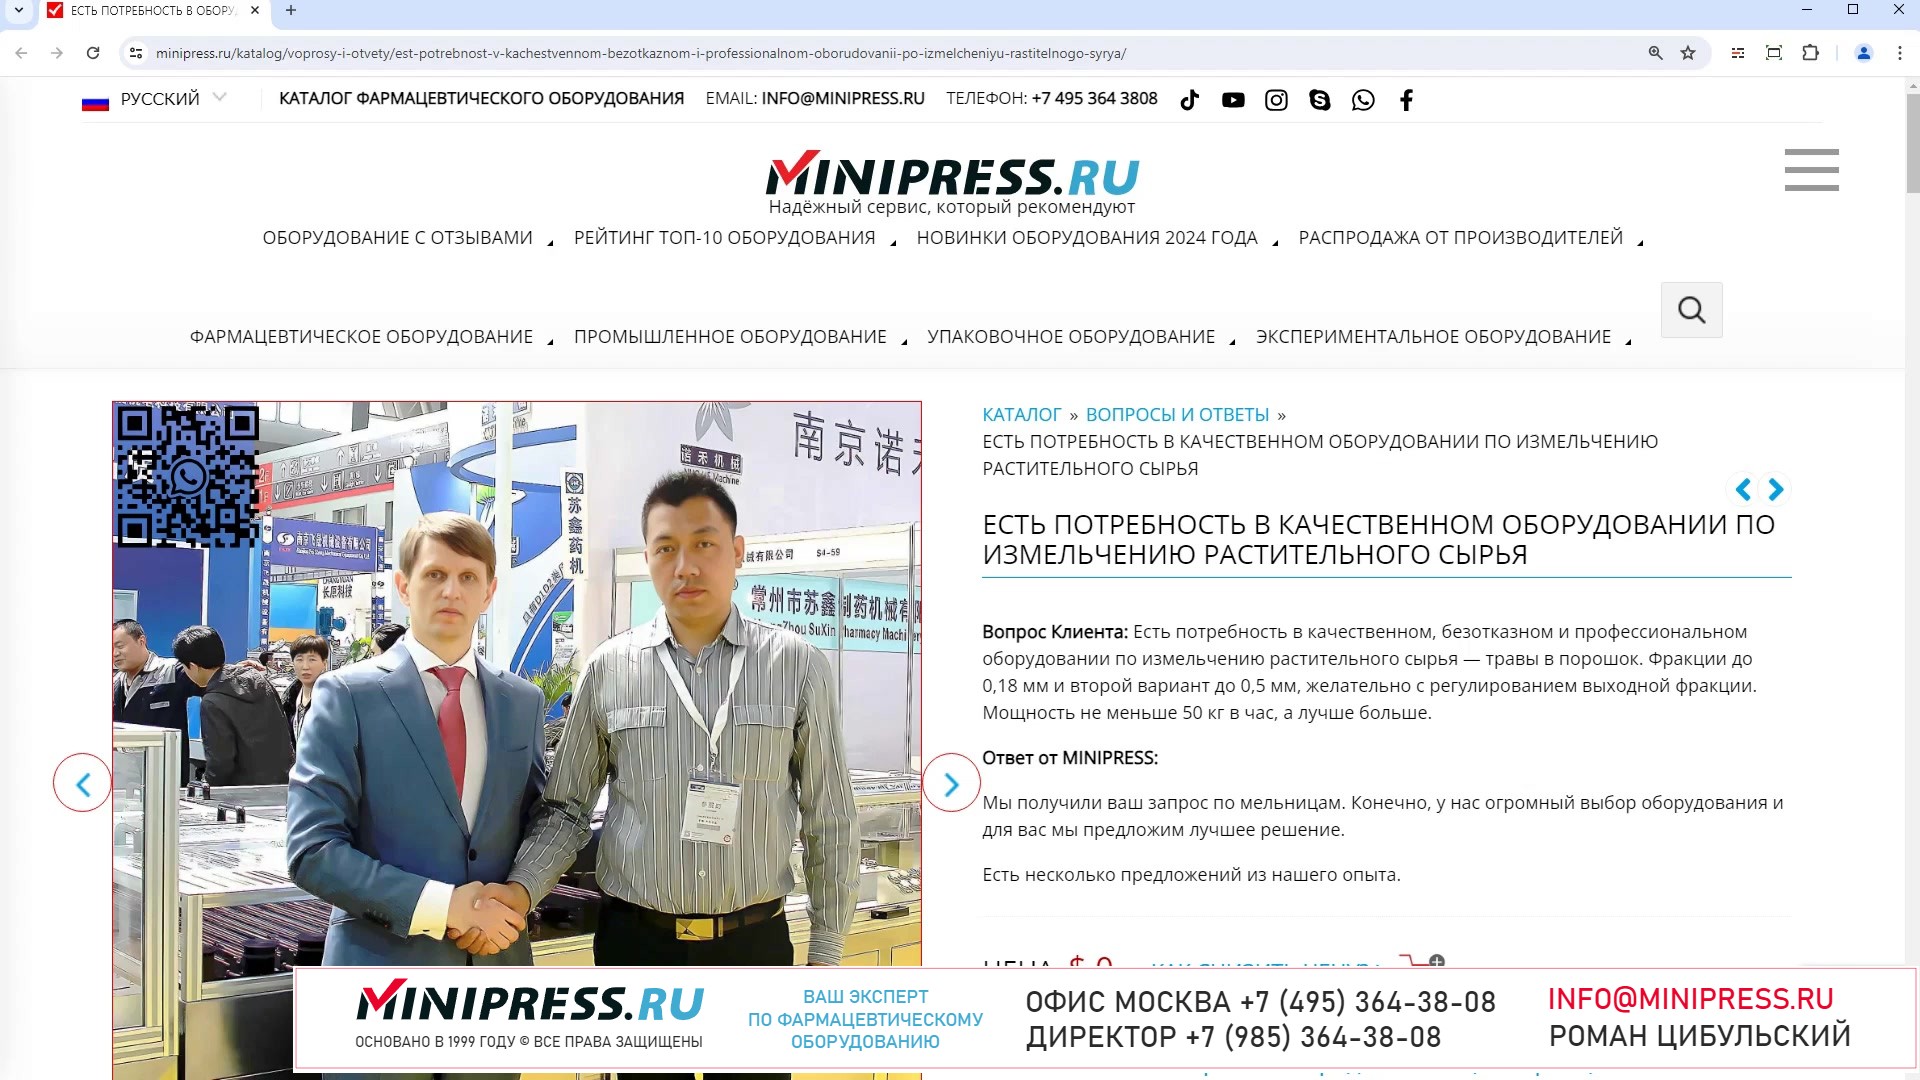 Minipress.ru Есть потребность в качественном оборудовании по измельчению растительного сырья